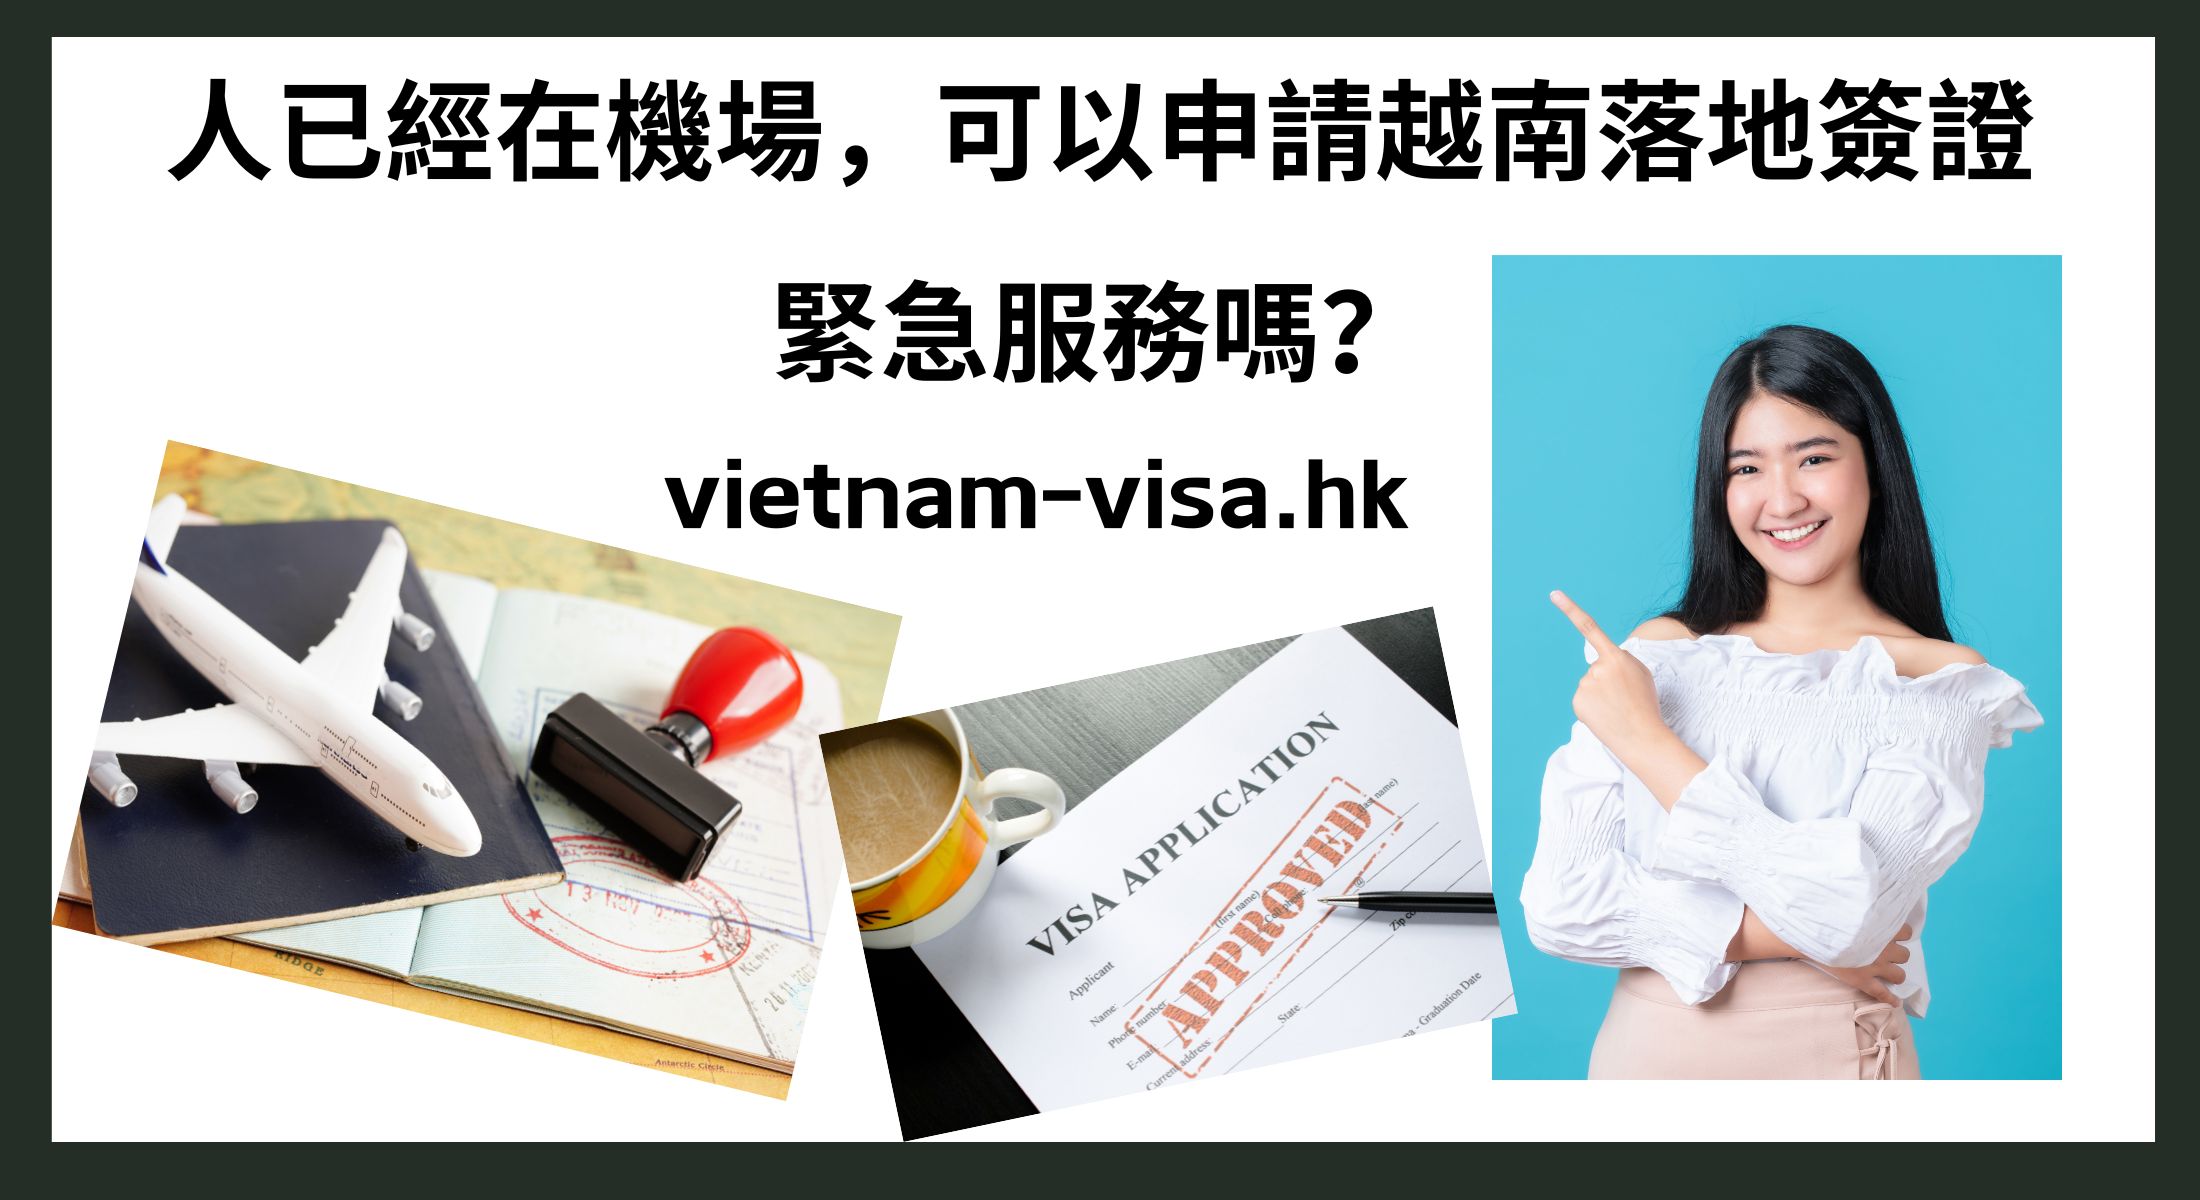 人已經在機場，可以申請越南落地簽證緊急服務嗎？